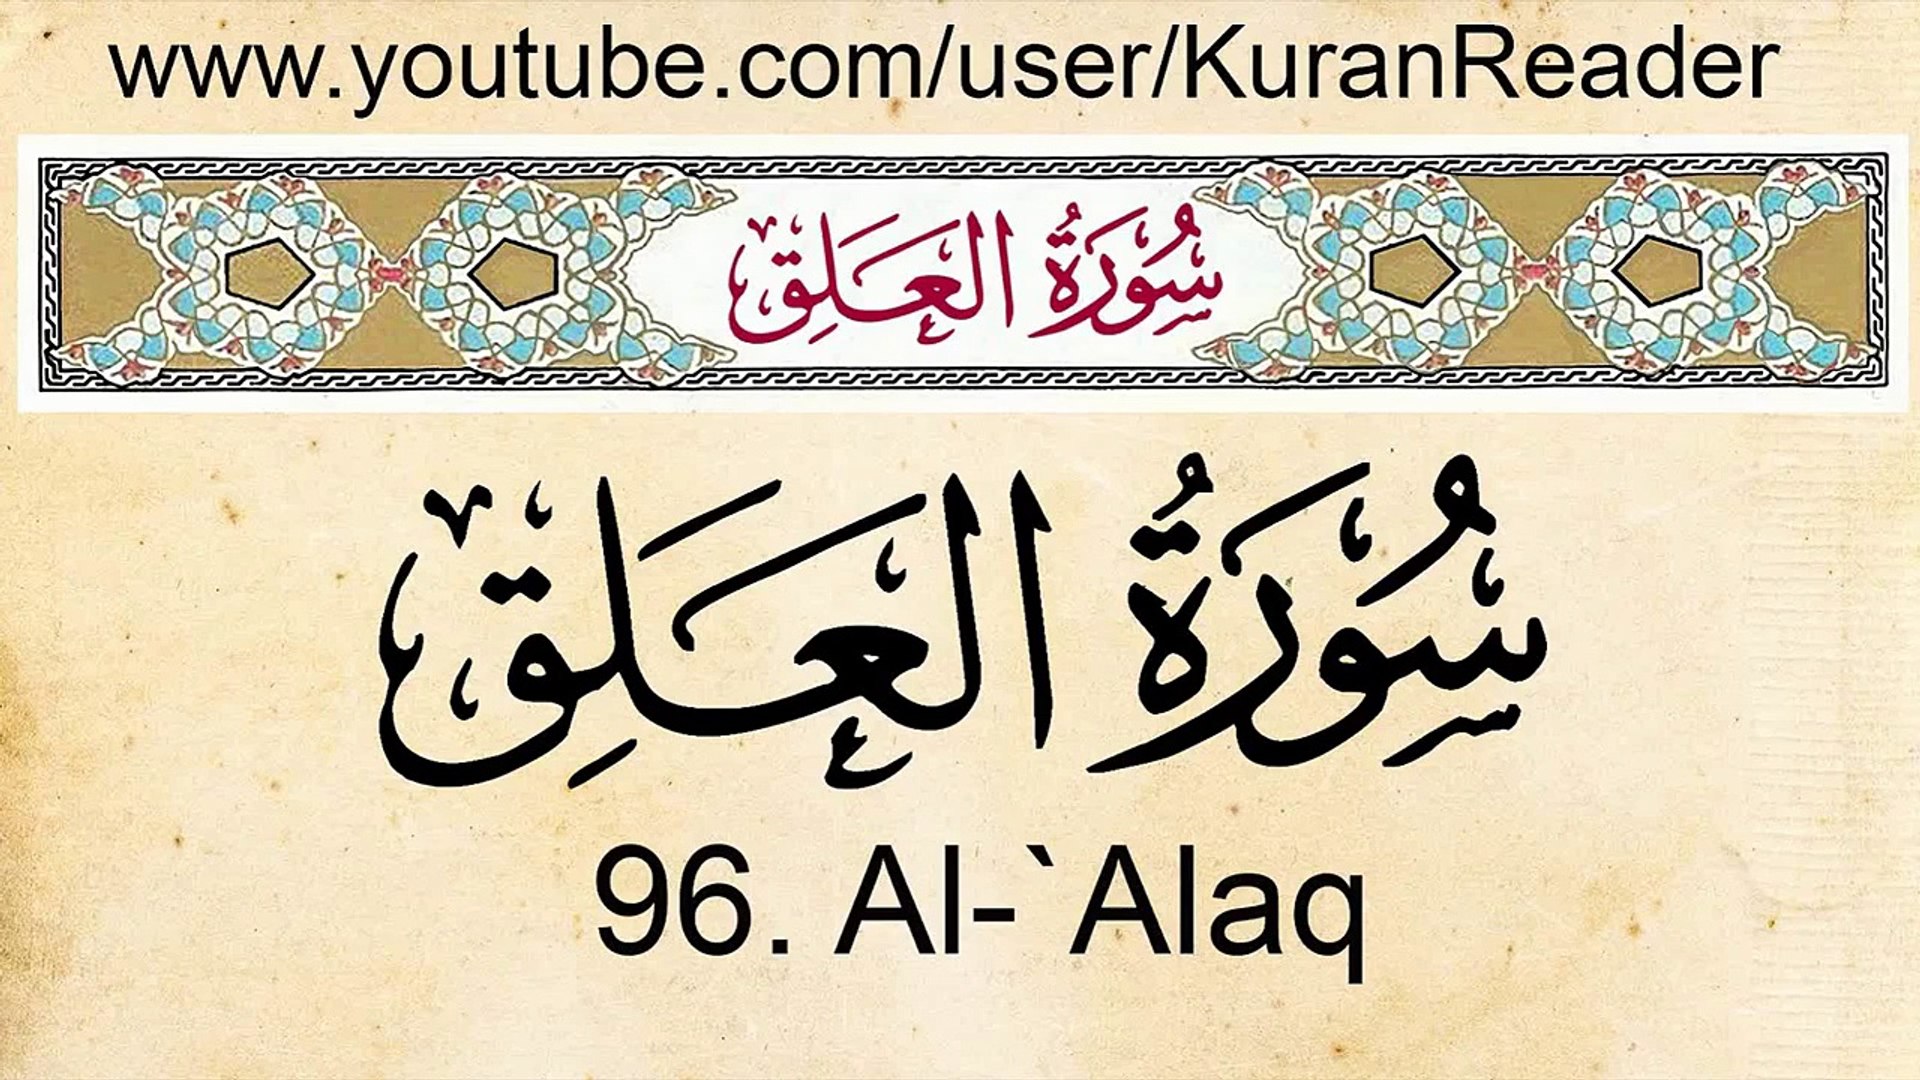 Surah al alaq